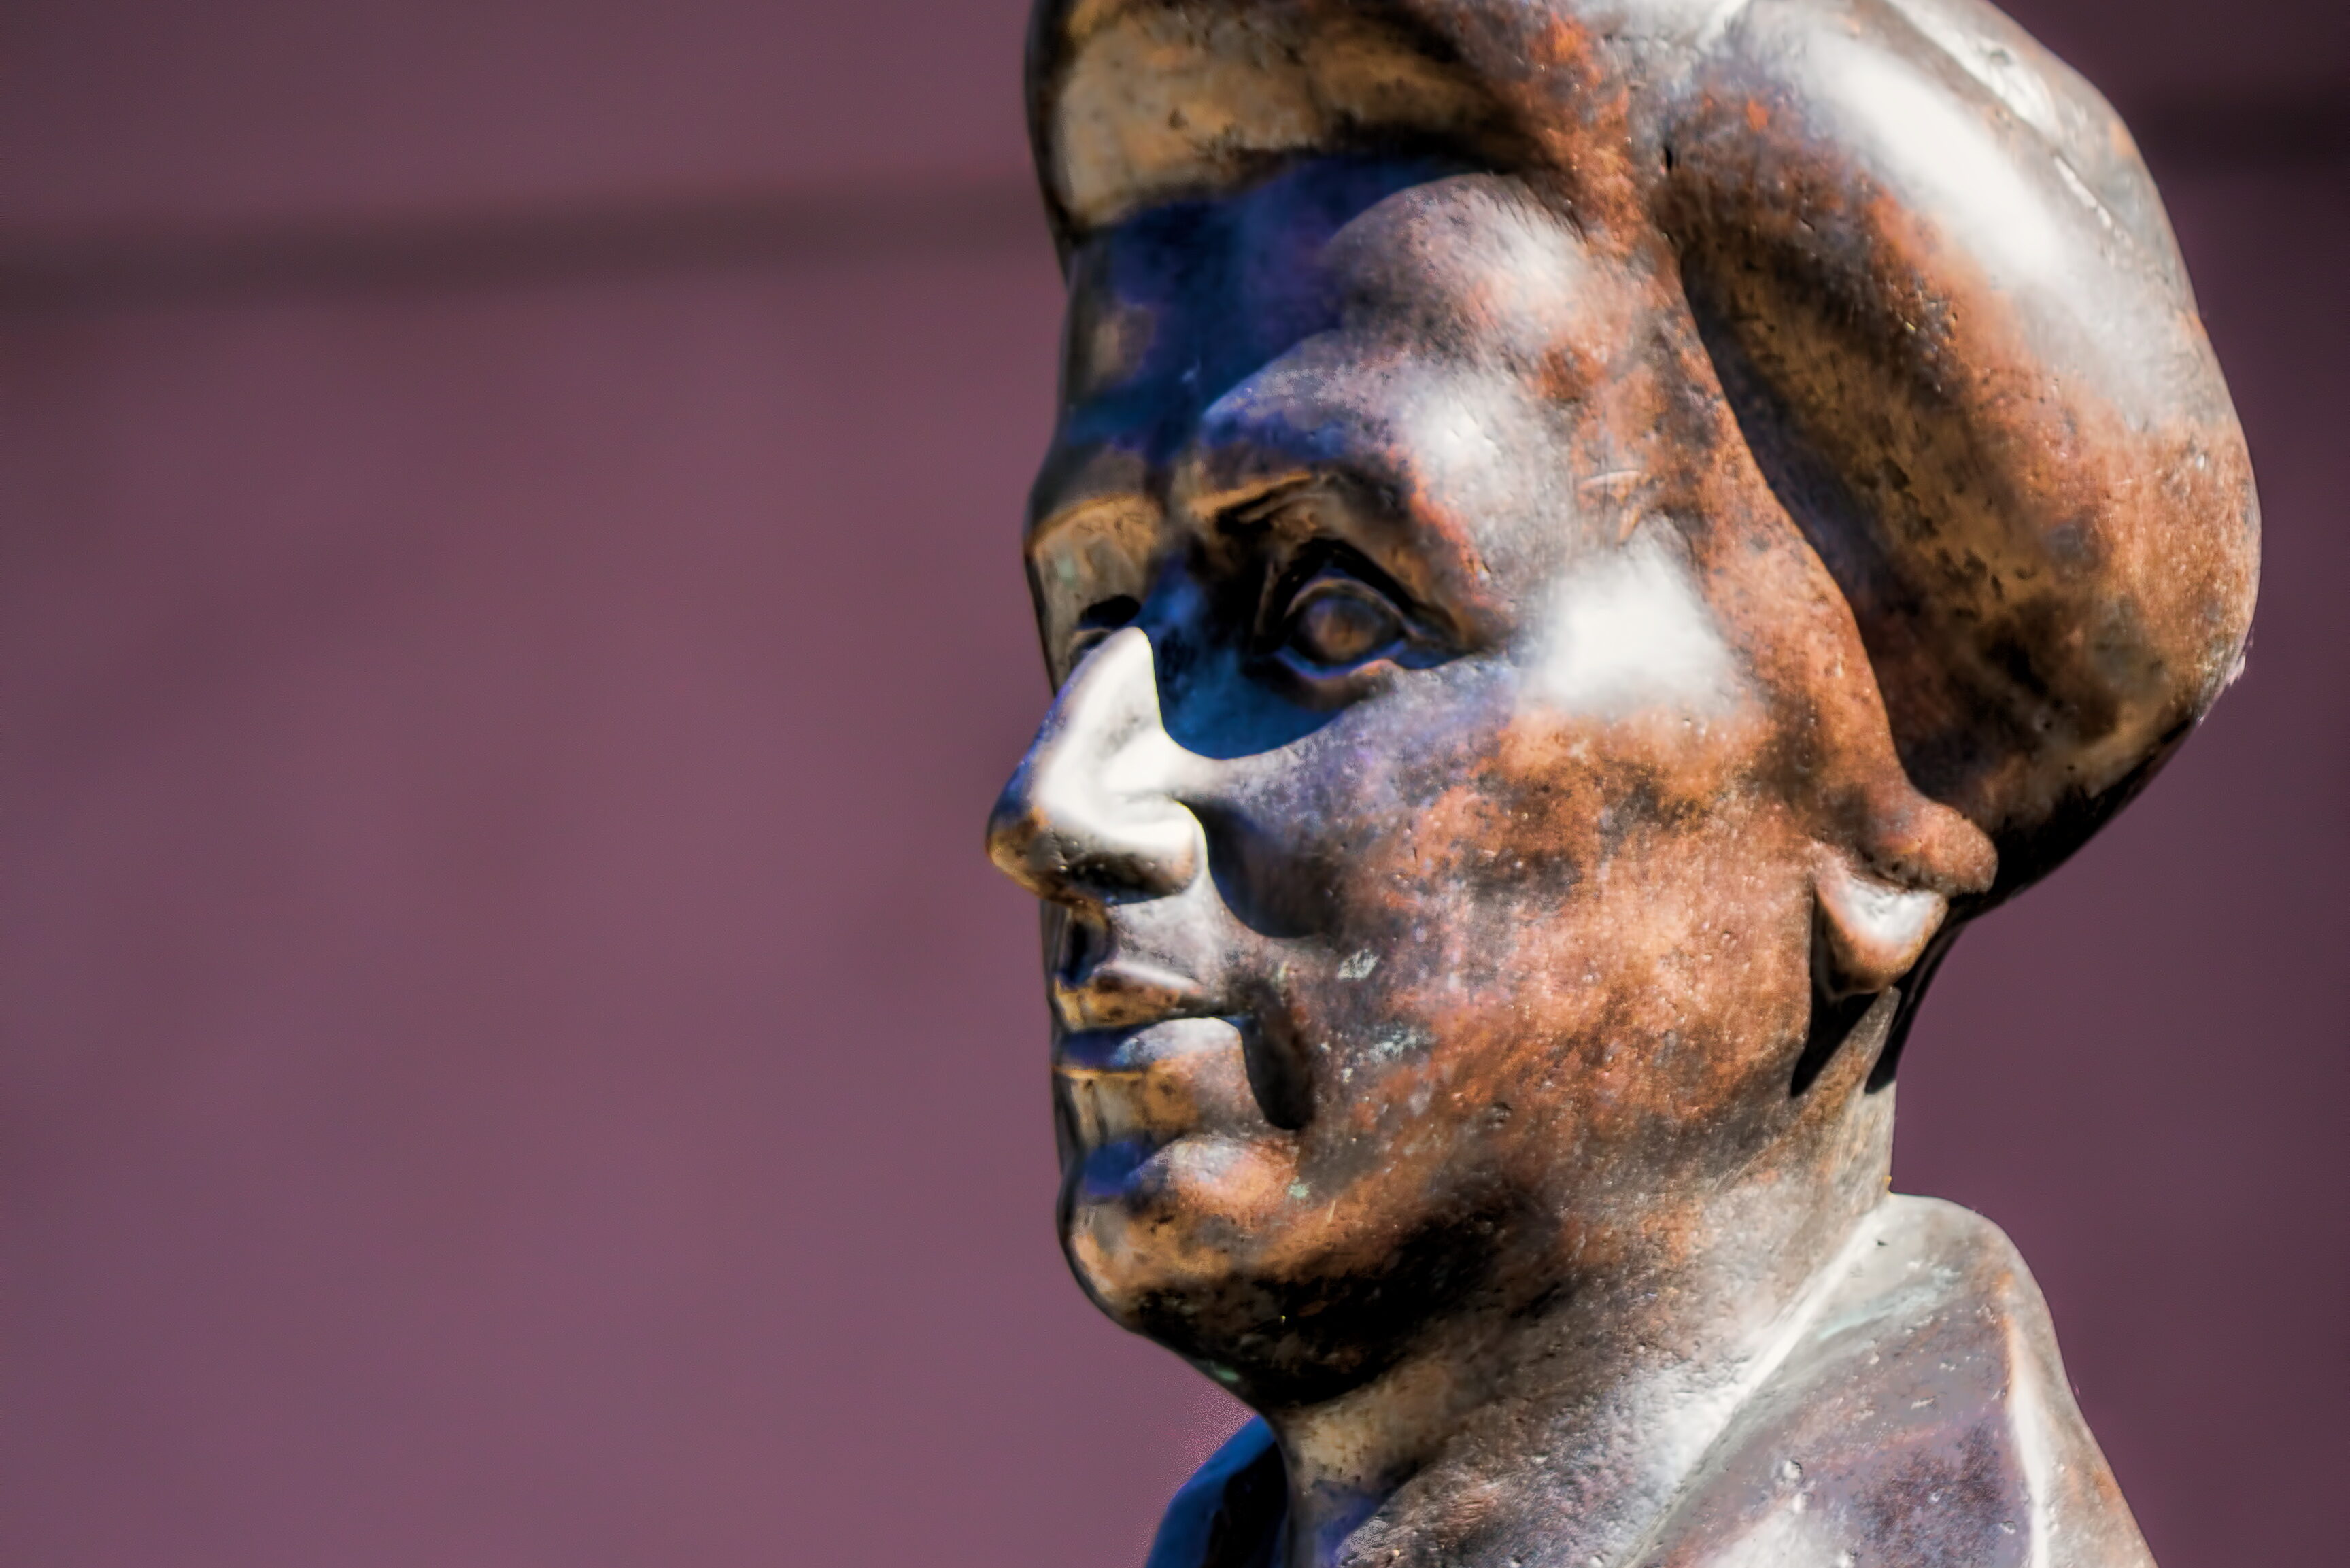   So lange das Kapital herrscht | Zum 150. Geburtstag von Rosa Luxemburg gibt es ein Denkzeichen für Leipzig  